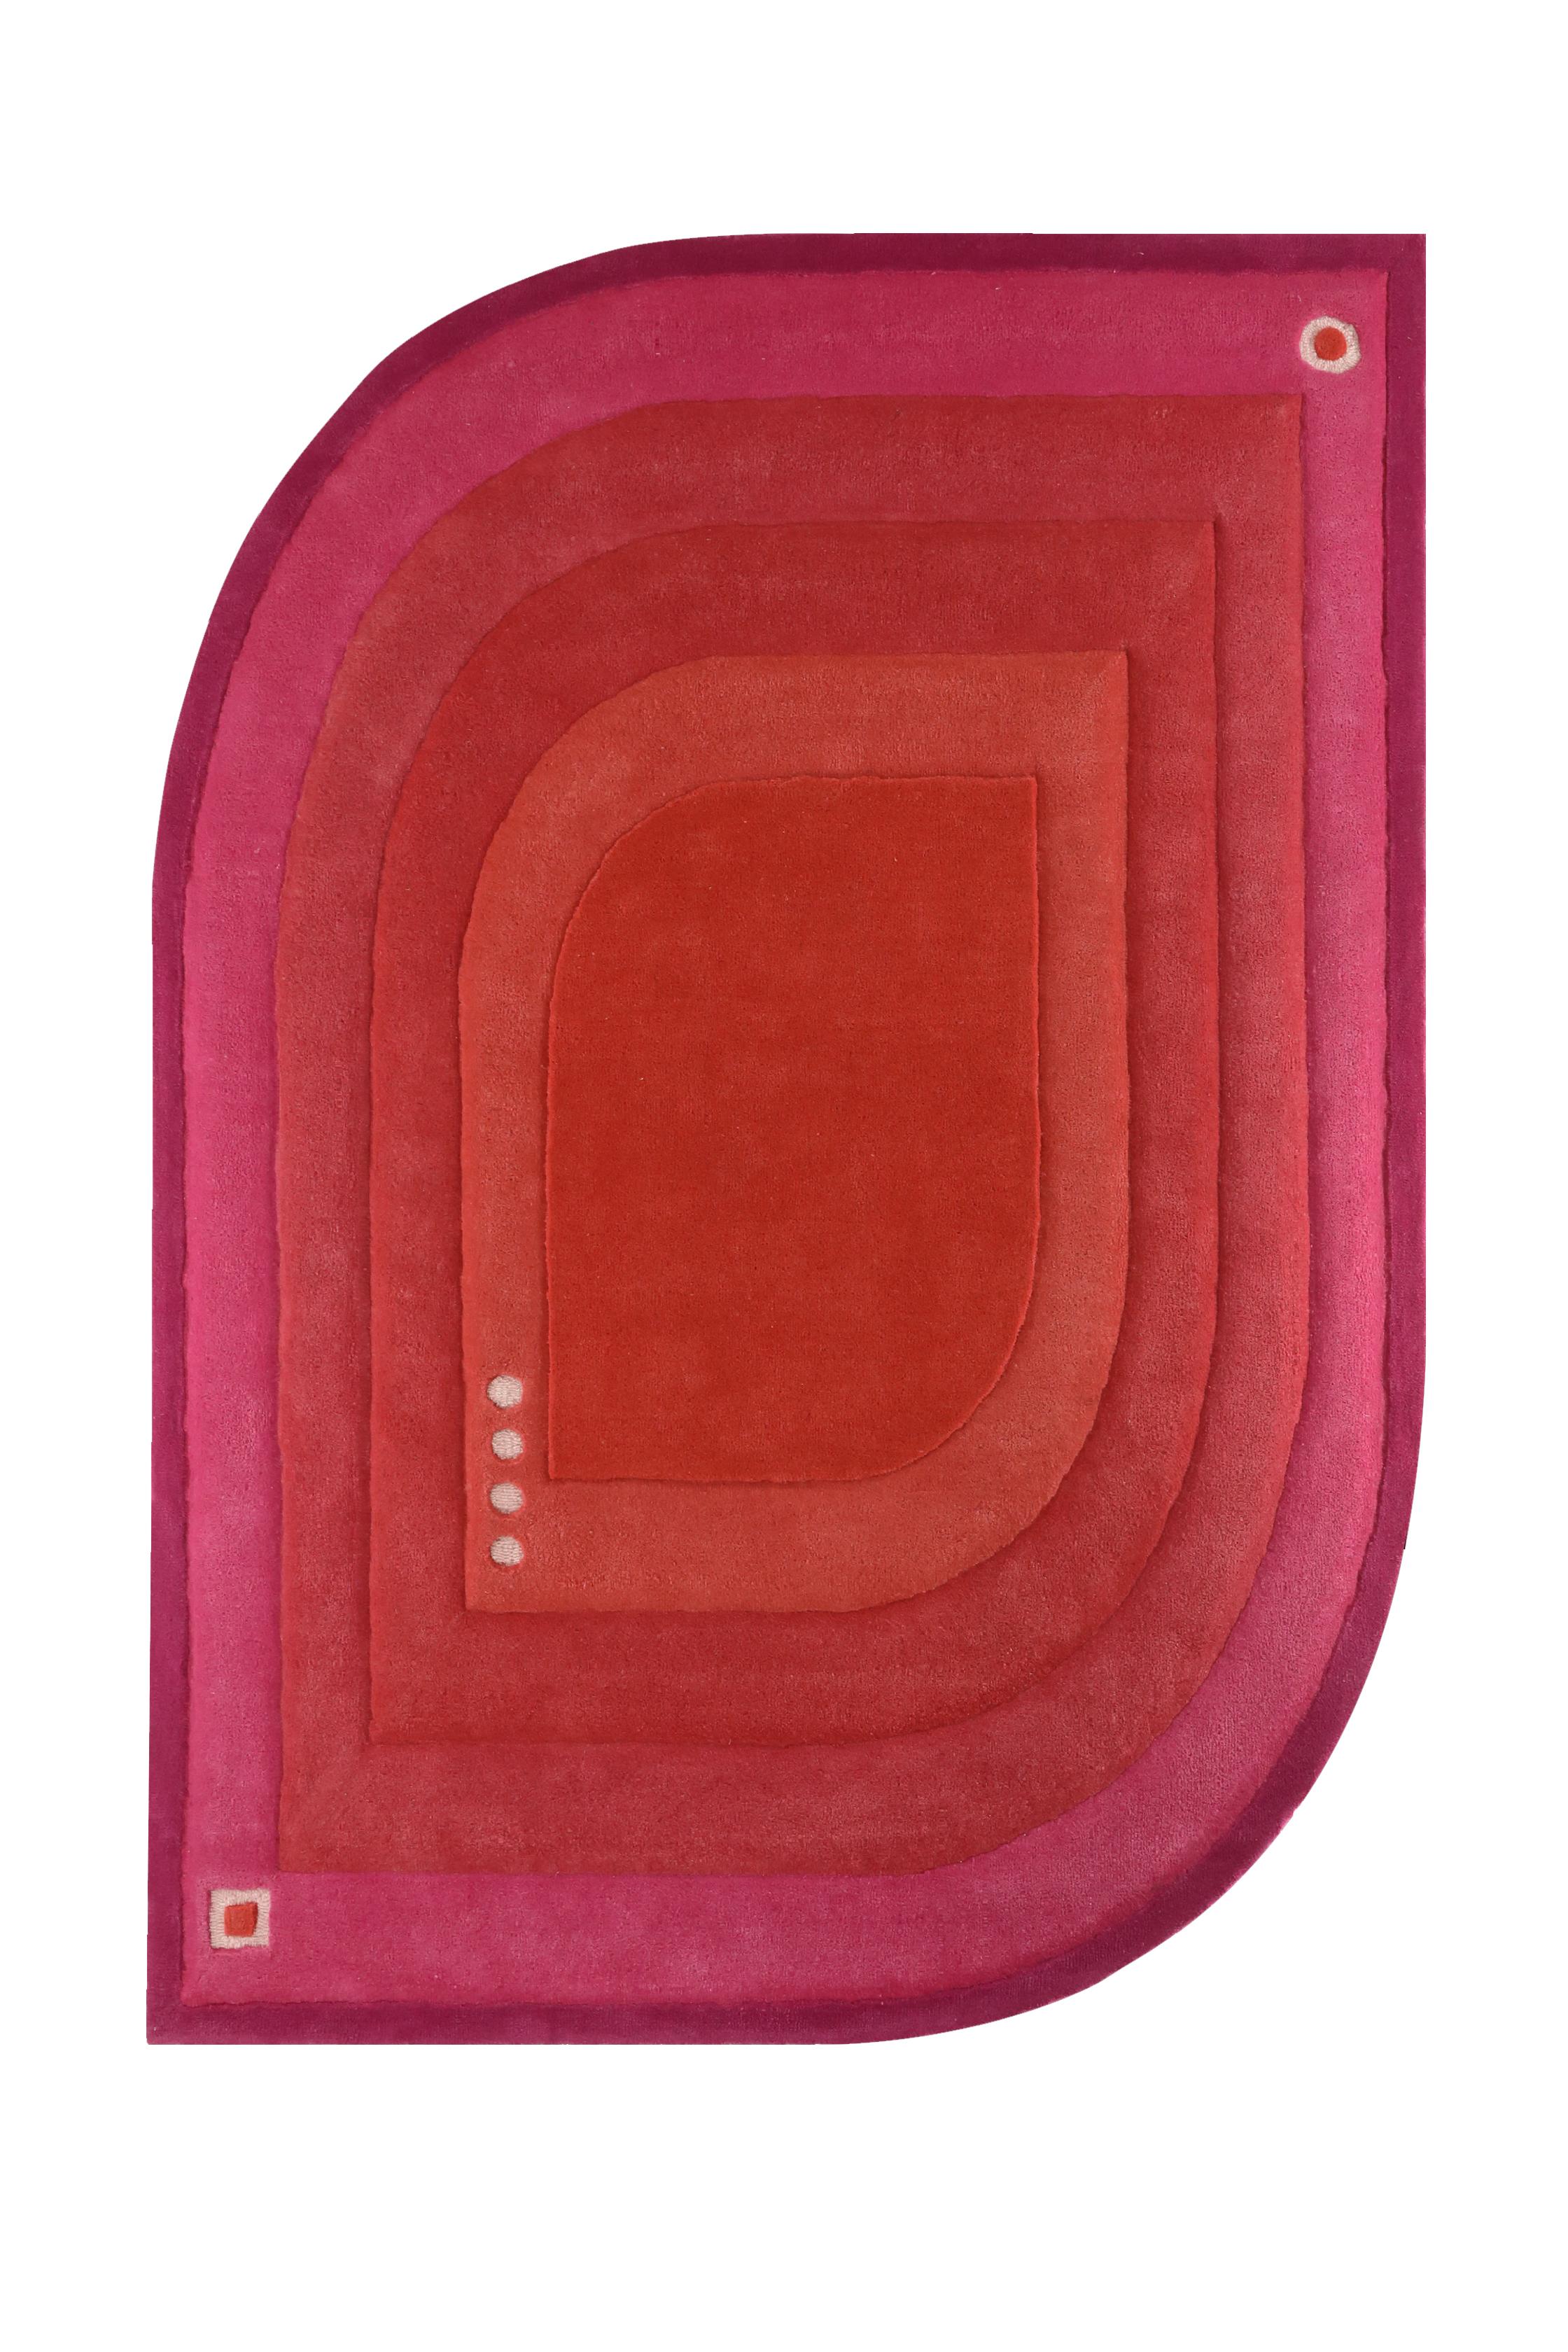 Anhelo AN01 Teppich von Bi Yuu
Abmessungen: T200 x 300 H cm
MATERIAL: 80% Schurwolle / 20% Bambus-Seide
Auch in anderen Abmessungen erhältlich.

Sie gründete Bi Yuu mit der Vision, dass die Arbeit über
Prozesse der Zusammenarbeit mit bestimmten